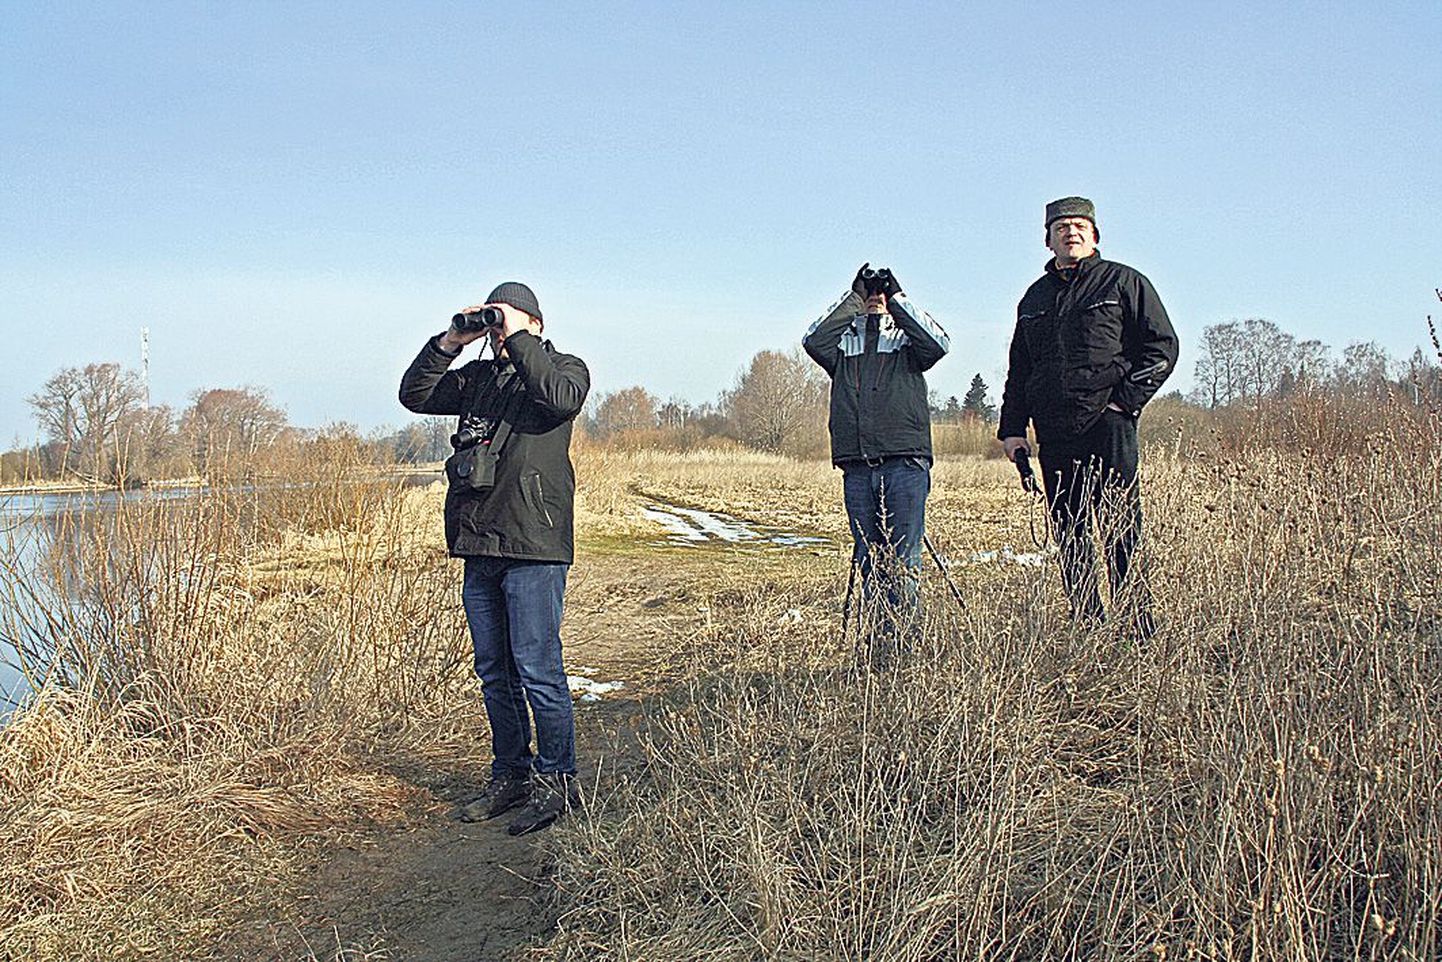 Linnade linnuvaatlusvõistlusel osalenud (vasakult) Aret Vooremäe, Margus Ots ja Peeter Raudsepp silmasid Tartu kõige lõunapoolsemas paigas Emajõe ääres kühmnokk-luige paari.